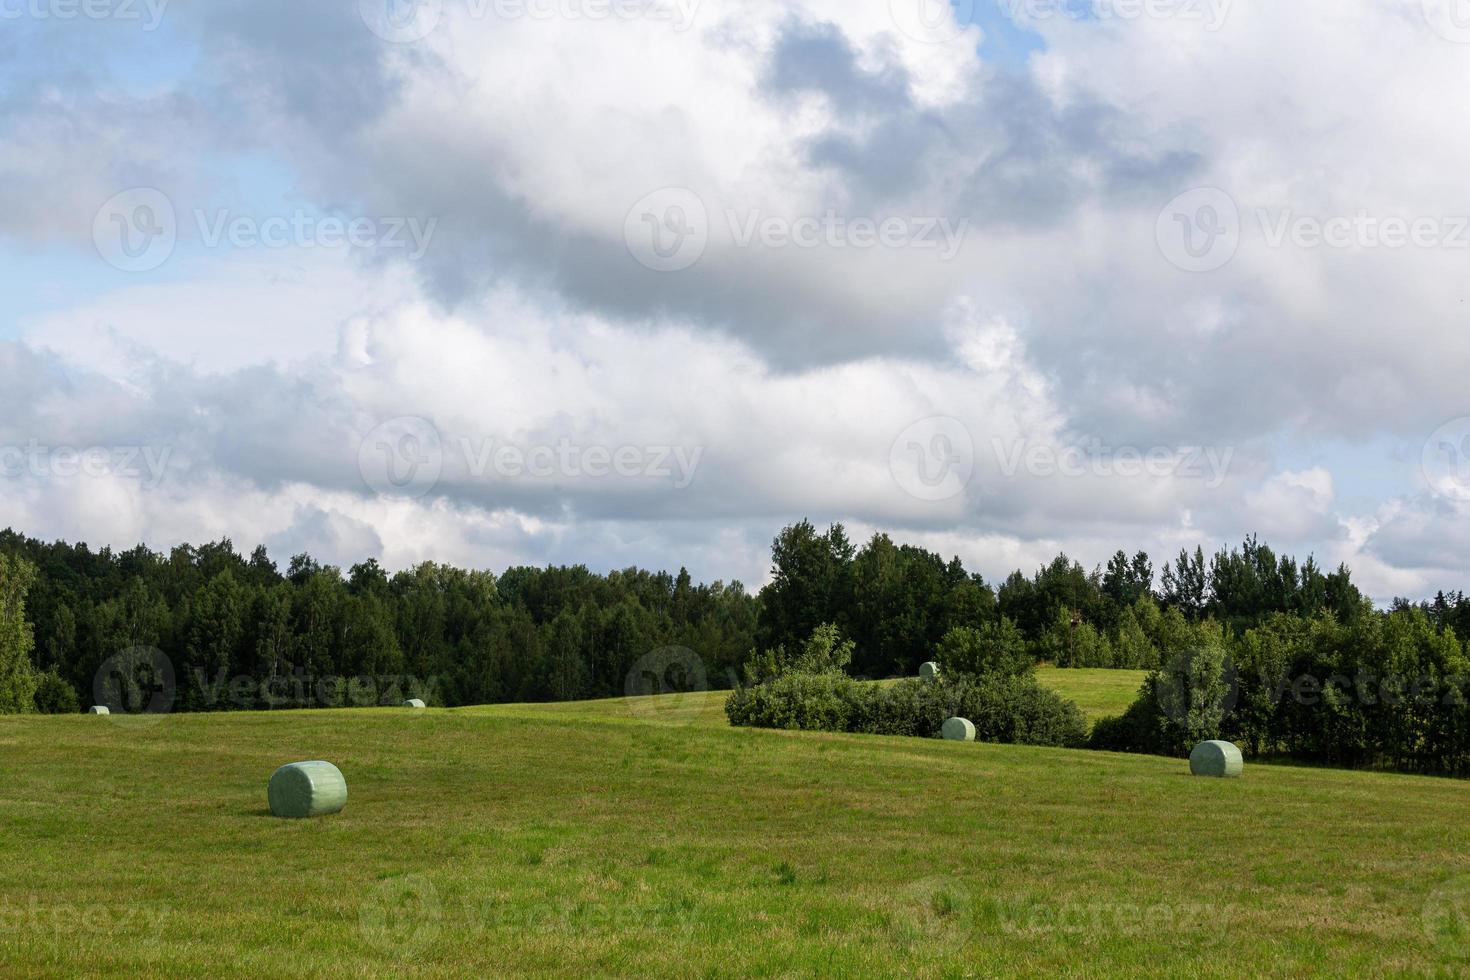 paysages d'été en lettonie photo